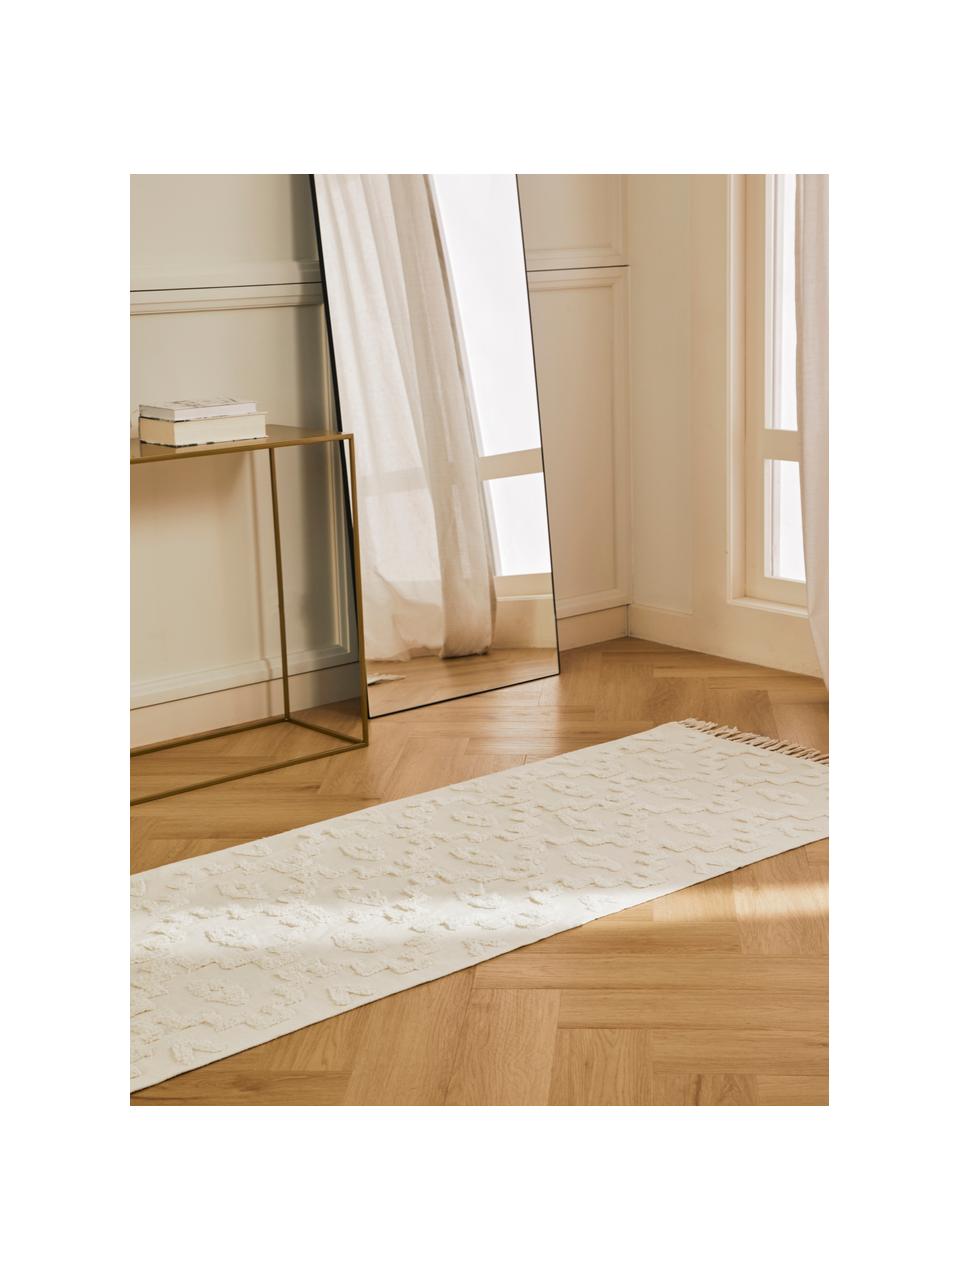 Alfombra corredor artesanal de algodón texturizada Idris, 100% algodón, Blanco crema, An 80 x L 200 cm